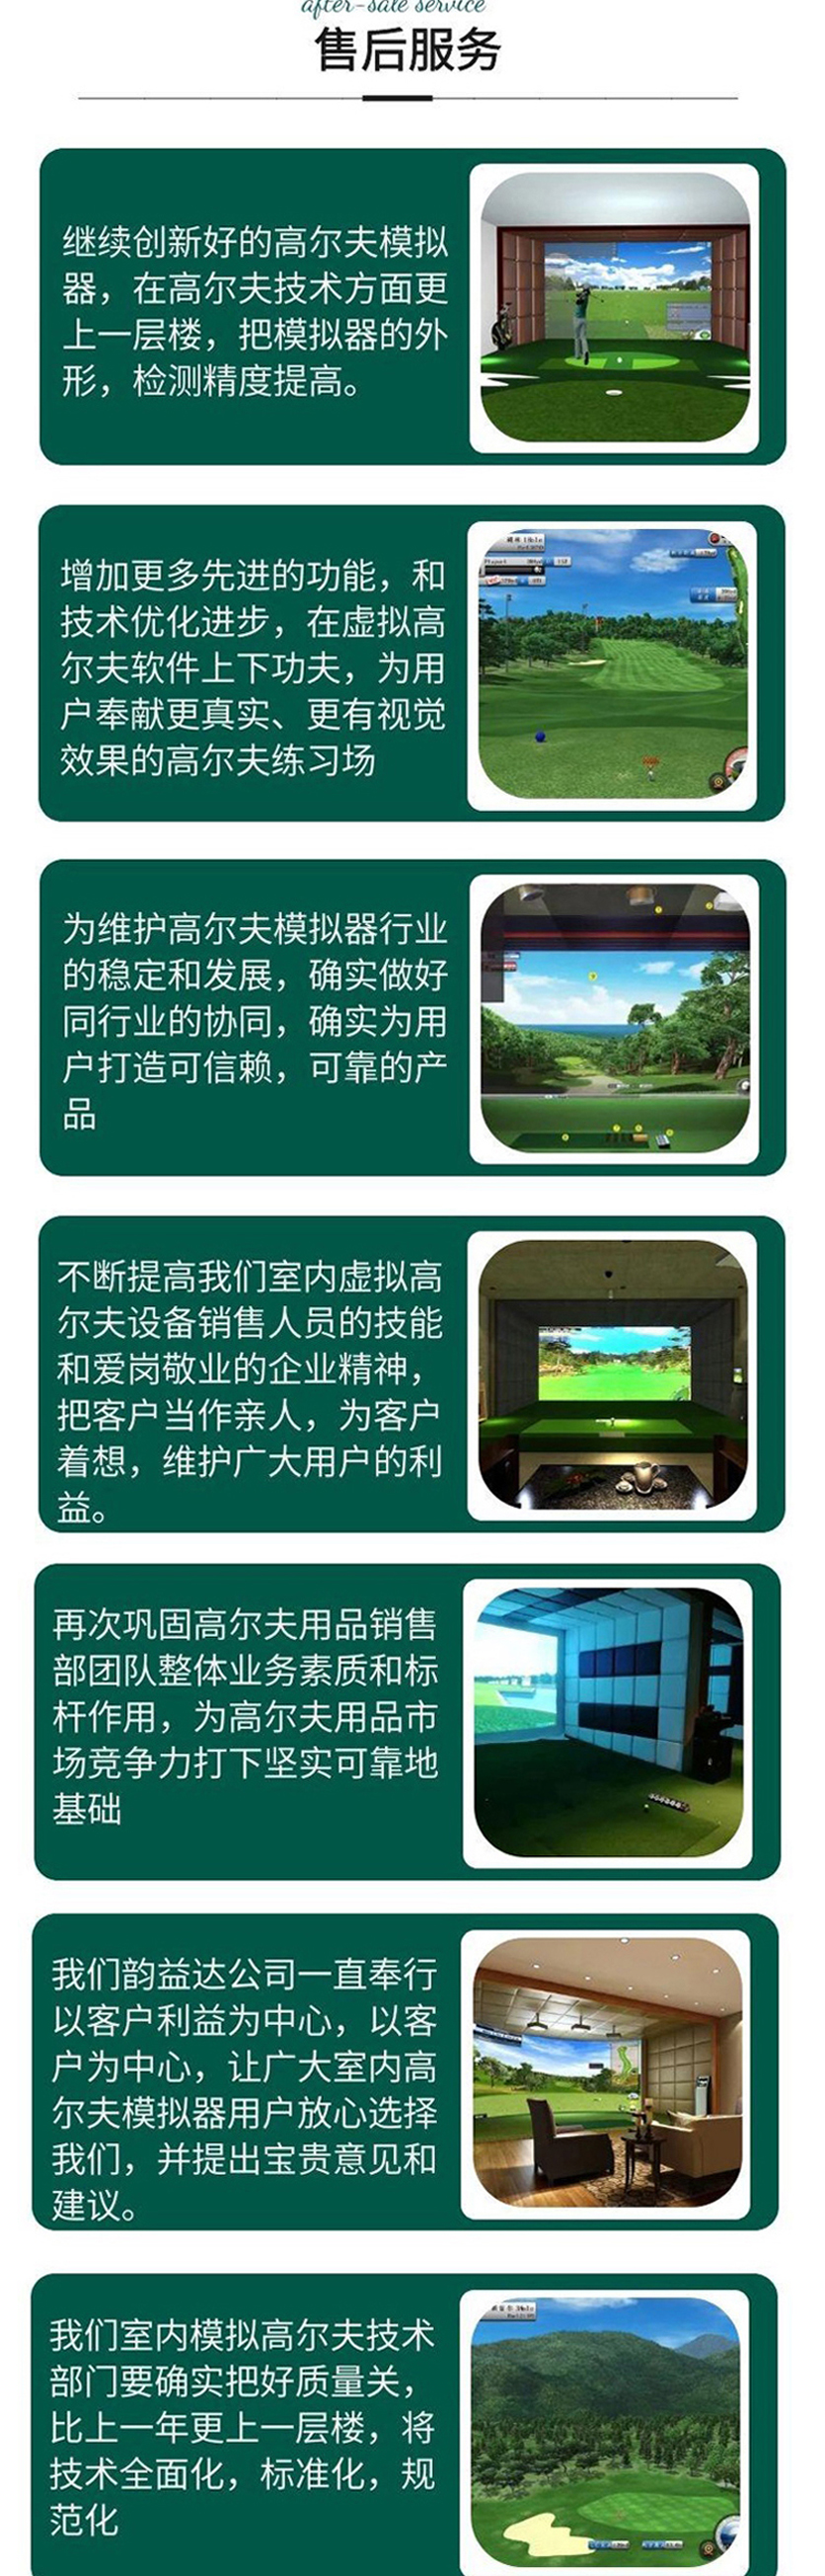 室内高尔夫模拟设备3.jpg